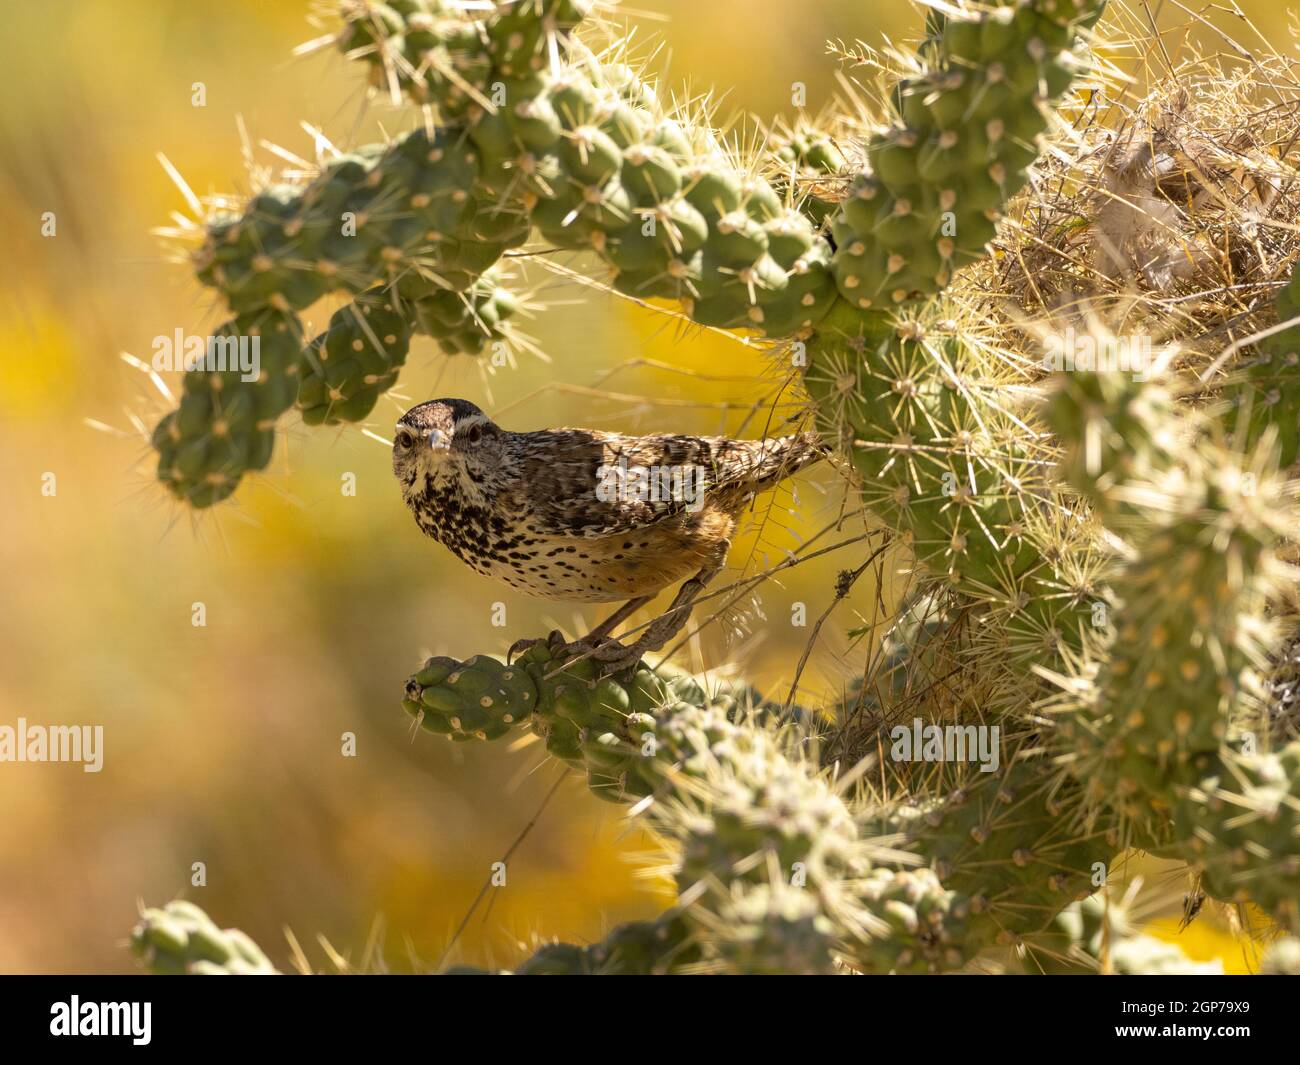 Cactus wren, Marana, near Tucson, Arizona. Stock Photo